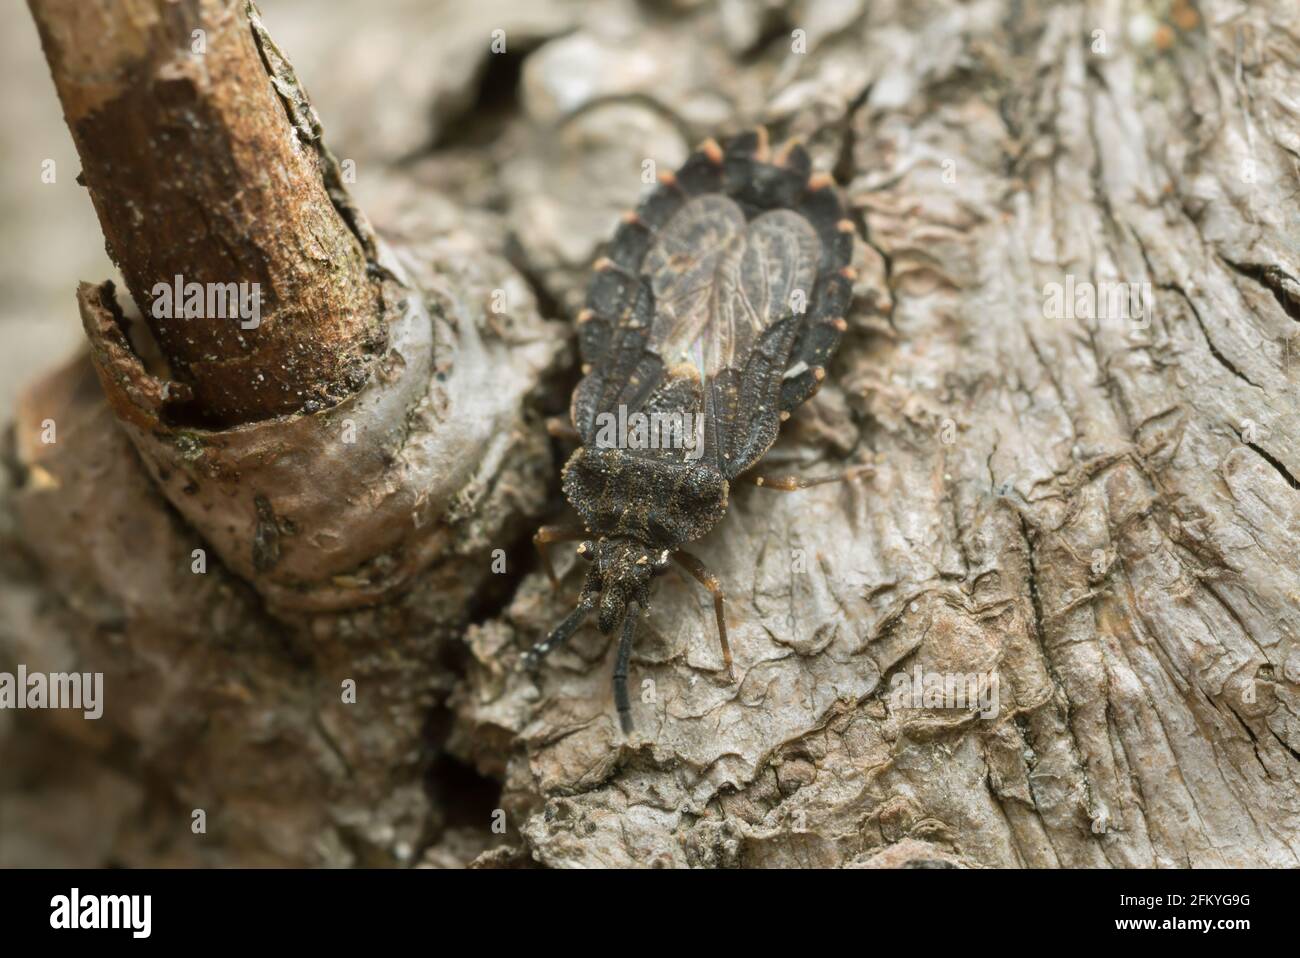 Flat bug, Aradus betulinus on wood Stock Photo